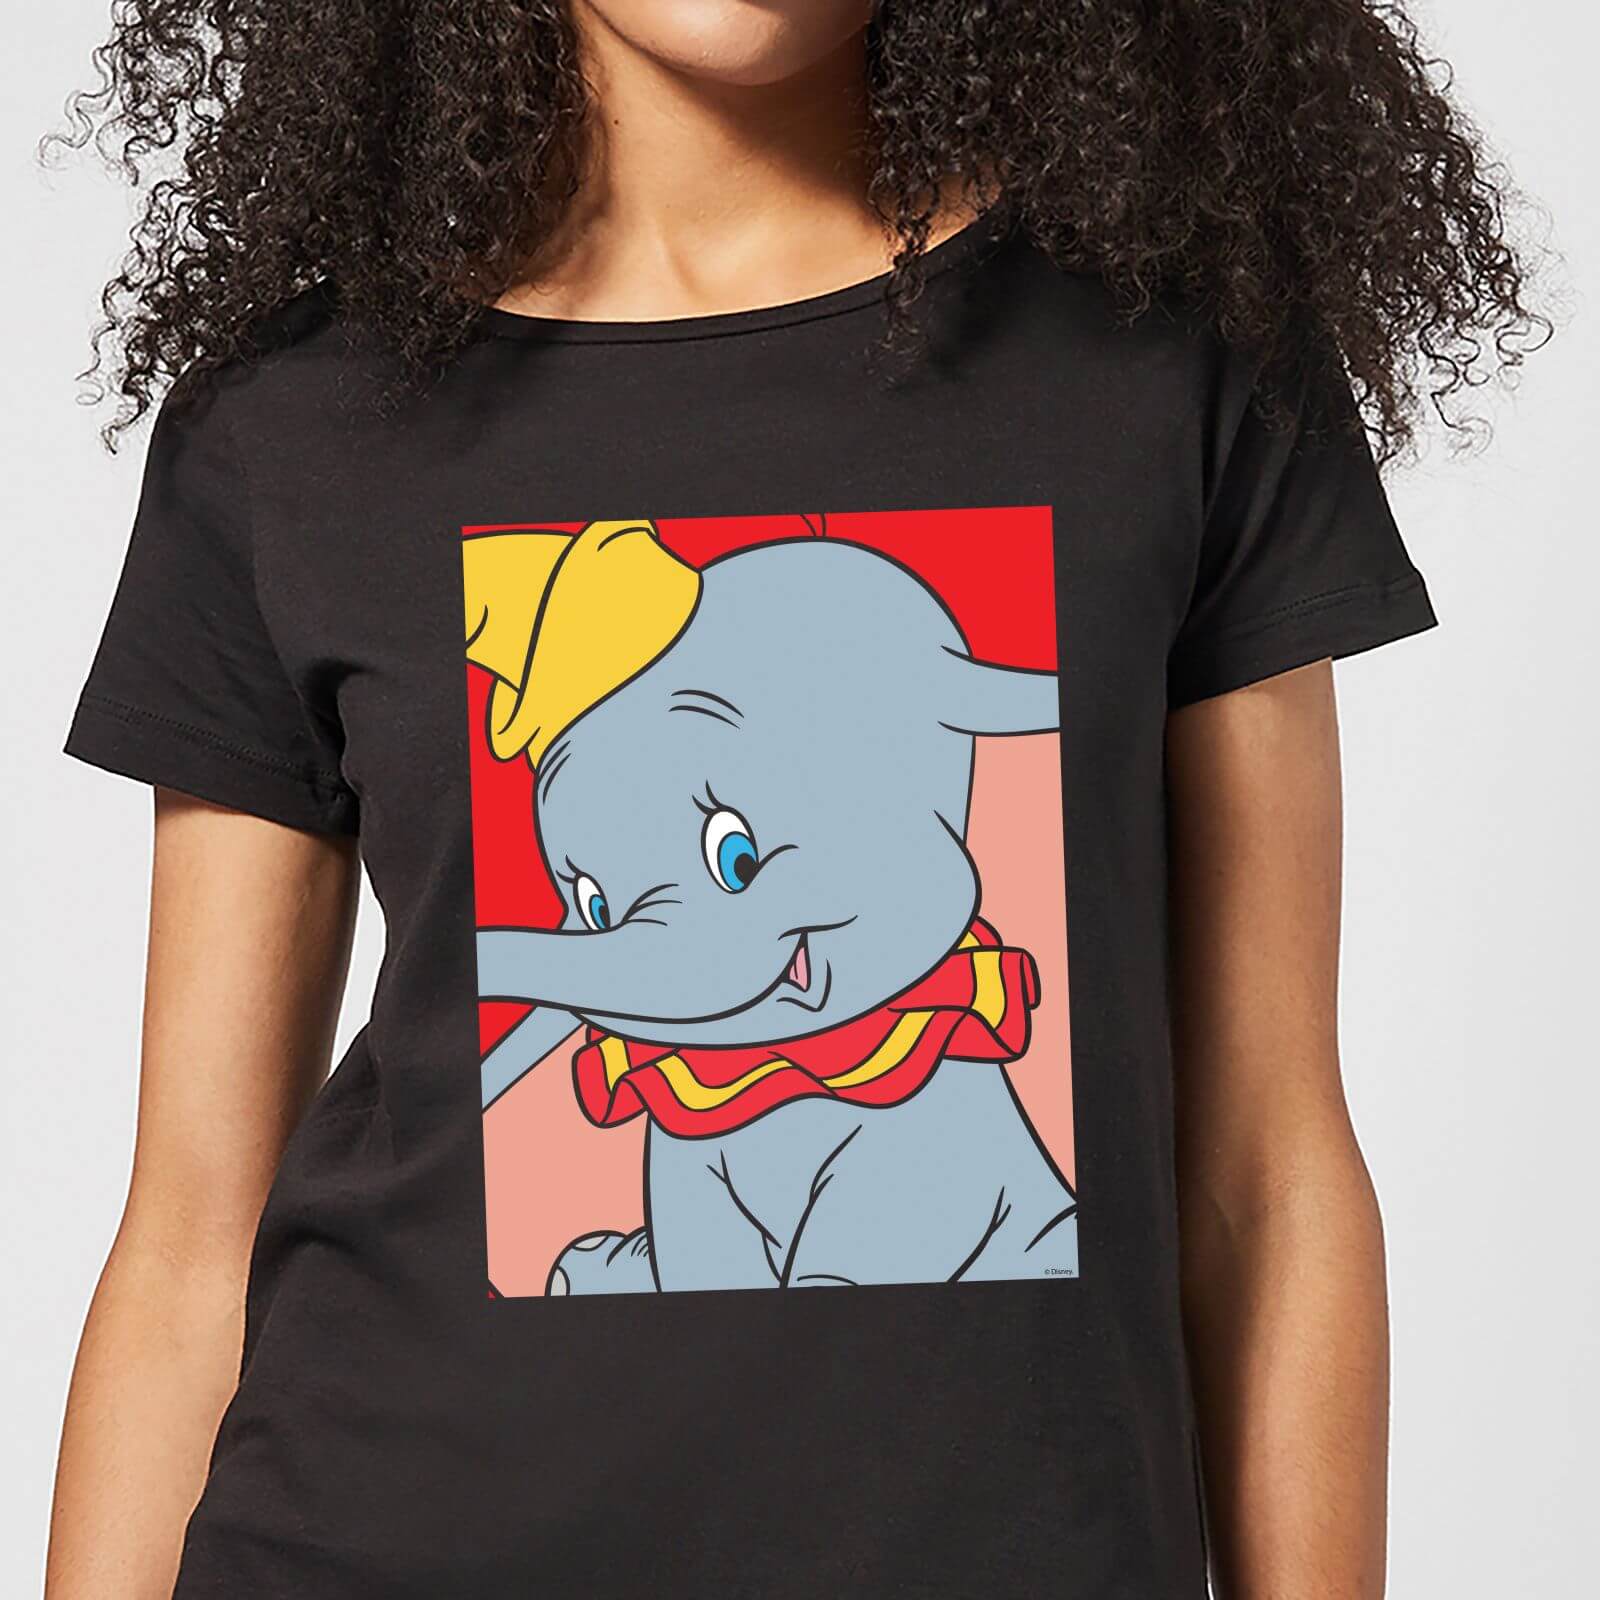 Dumbo Portrait Women's T-Shirt - Black - S - Black